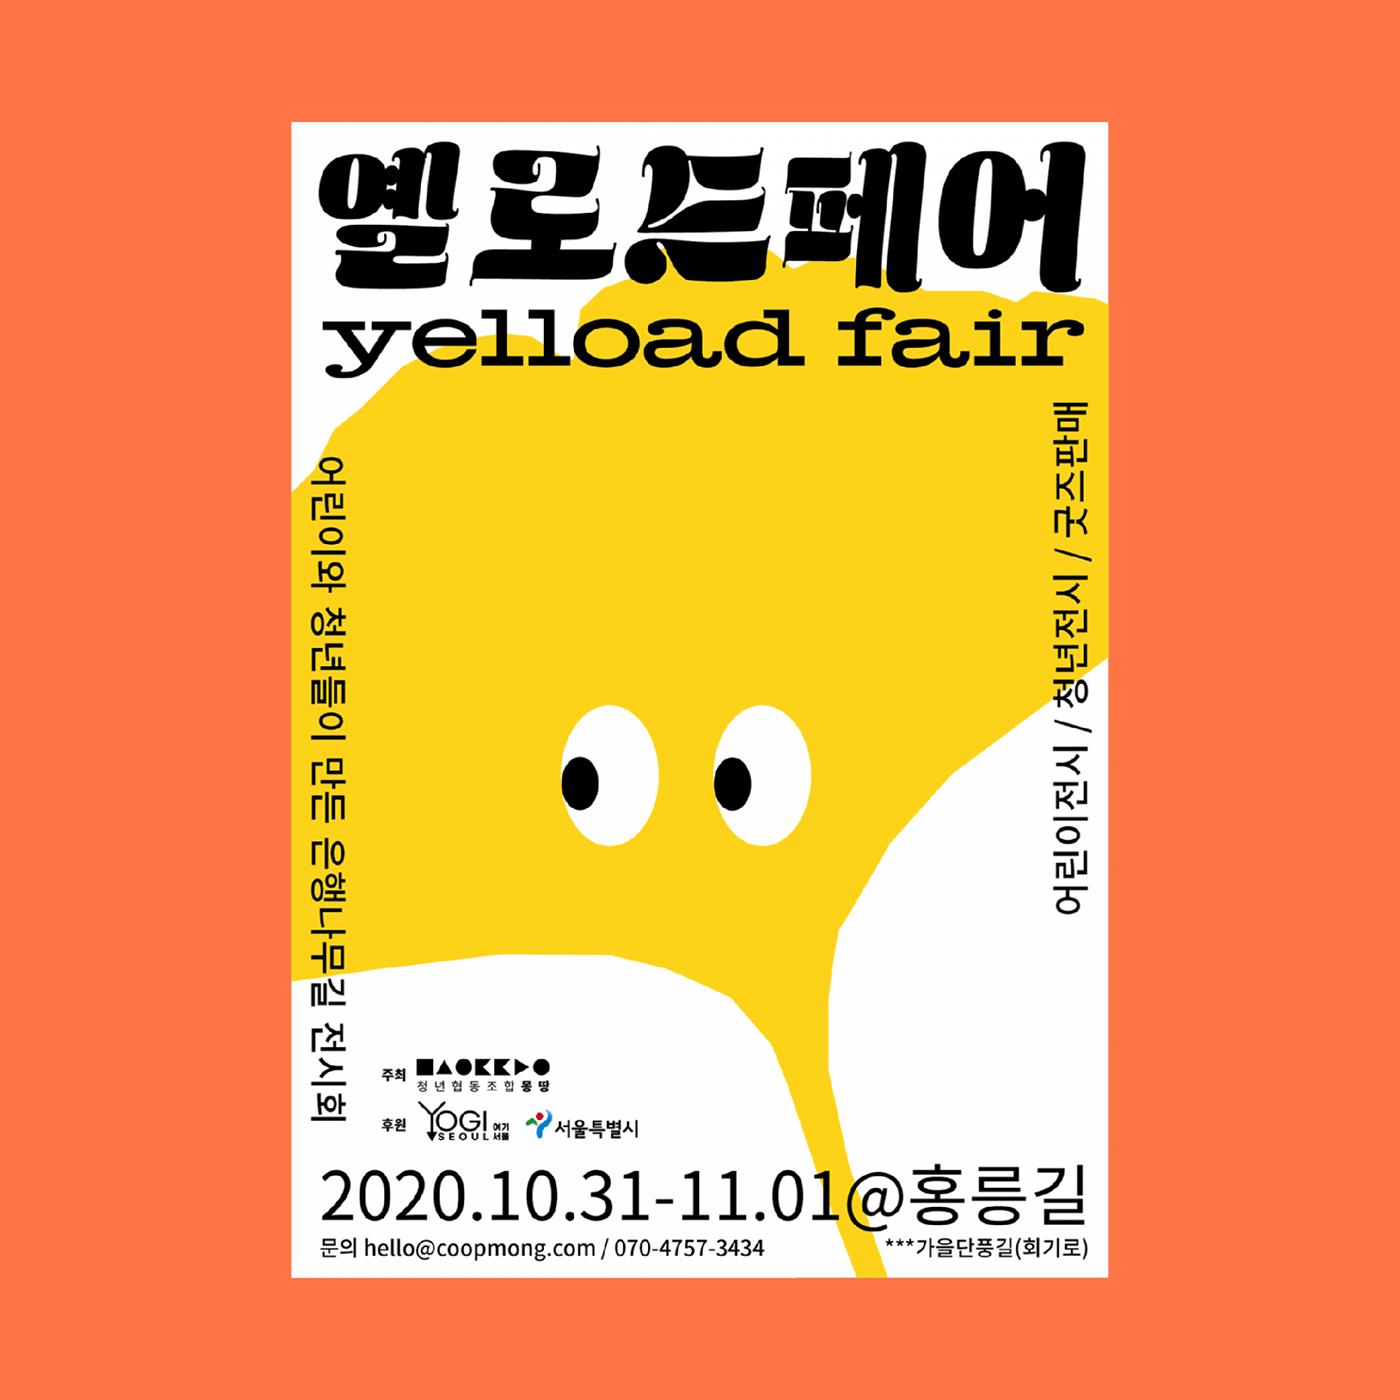 banner design banners dongdaemun Fair fair poster poster Poster Design posters seoul